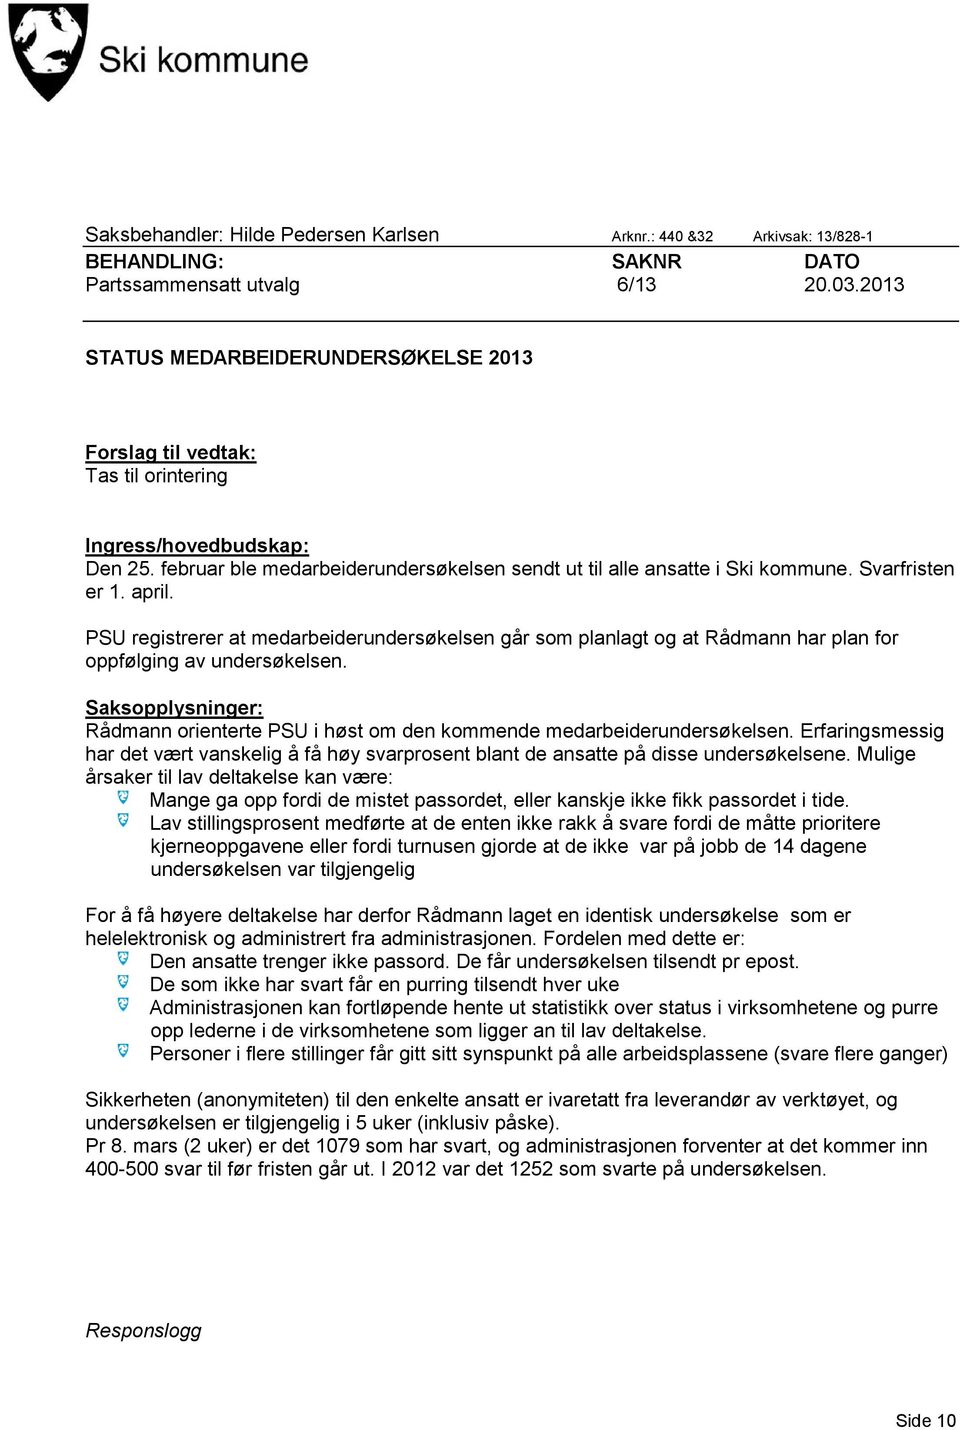 Svarfristen er 1. april. PSU registrerer at medarbeiderundersøkelsen går som planlagt og at Rådmann har plan for oppfølging av undersøkelsen.